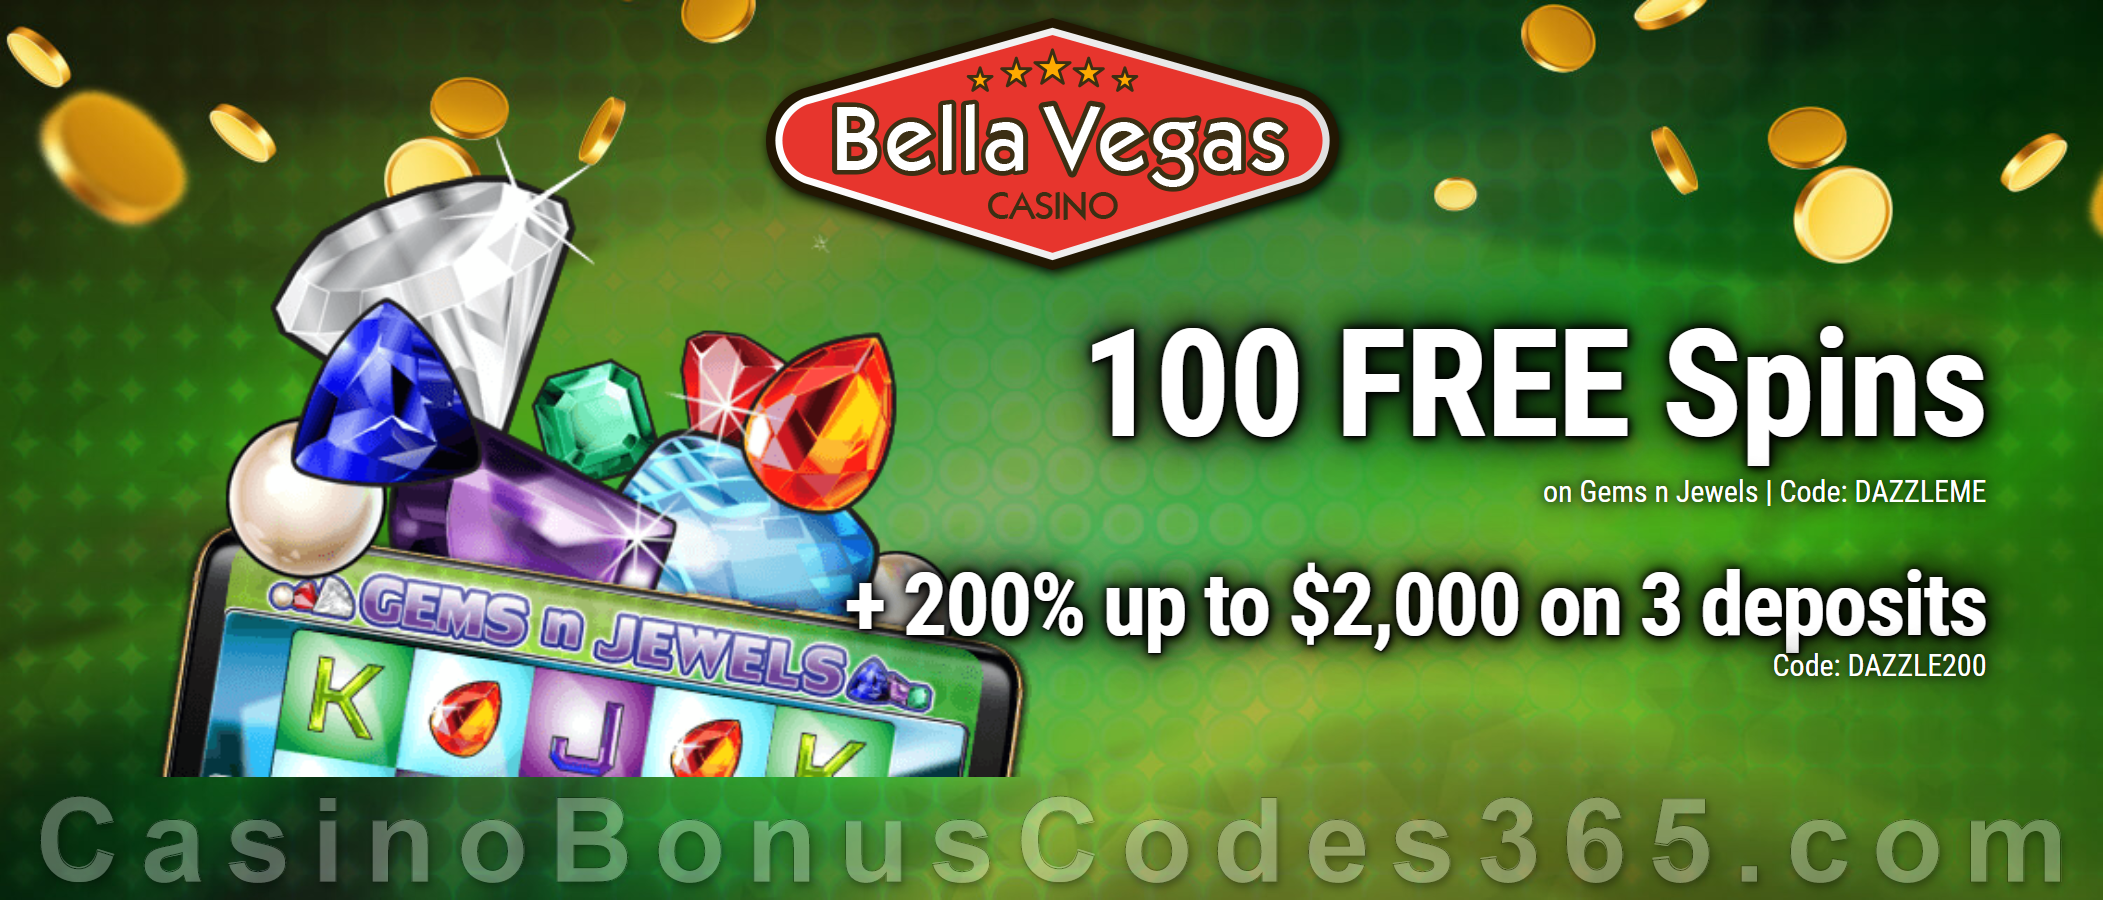 Bella Vegas Casino No Deposit Bonus 2017